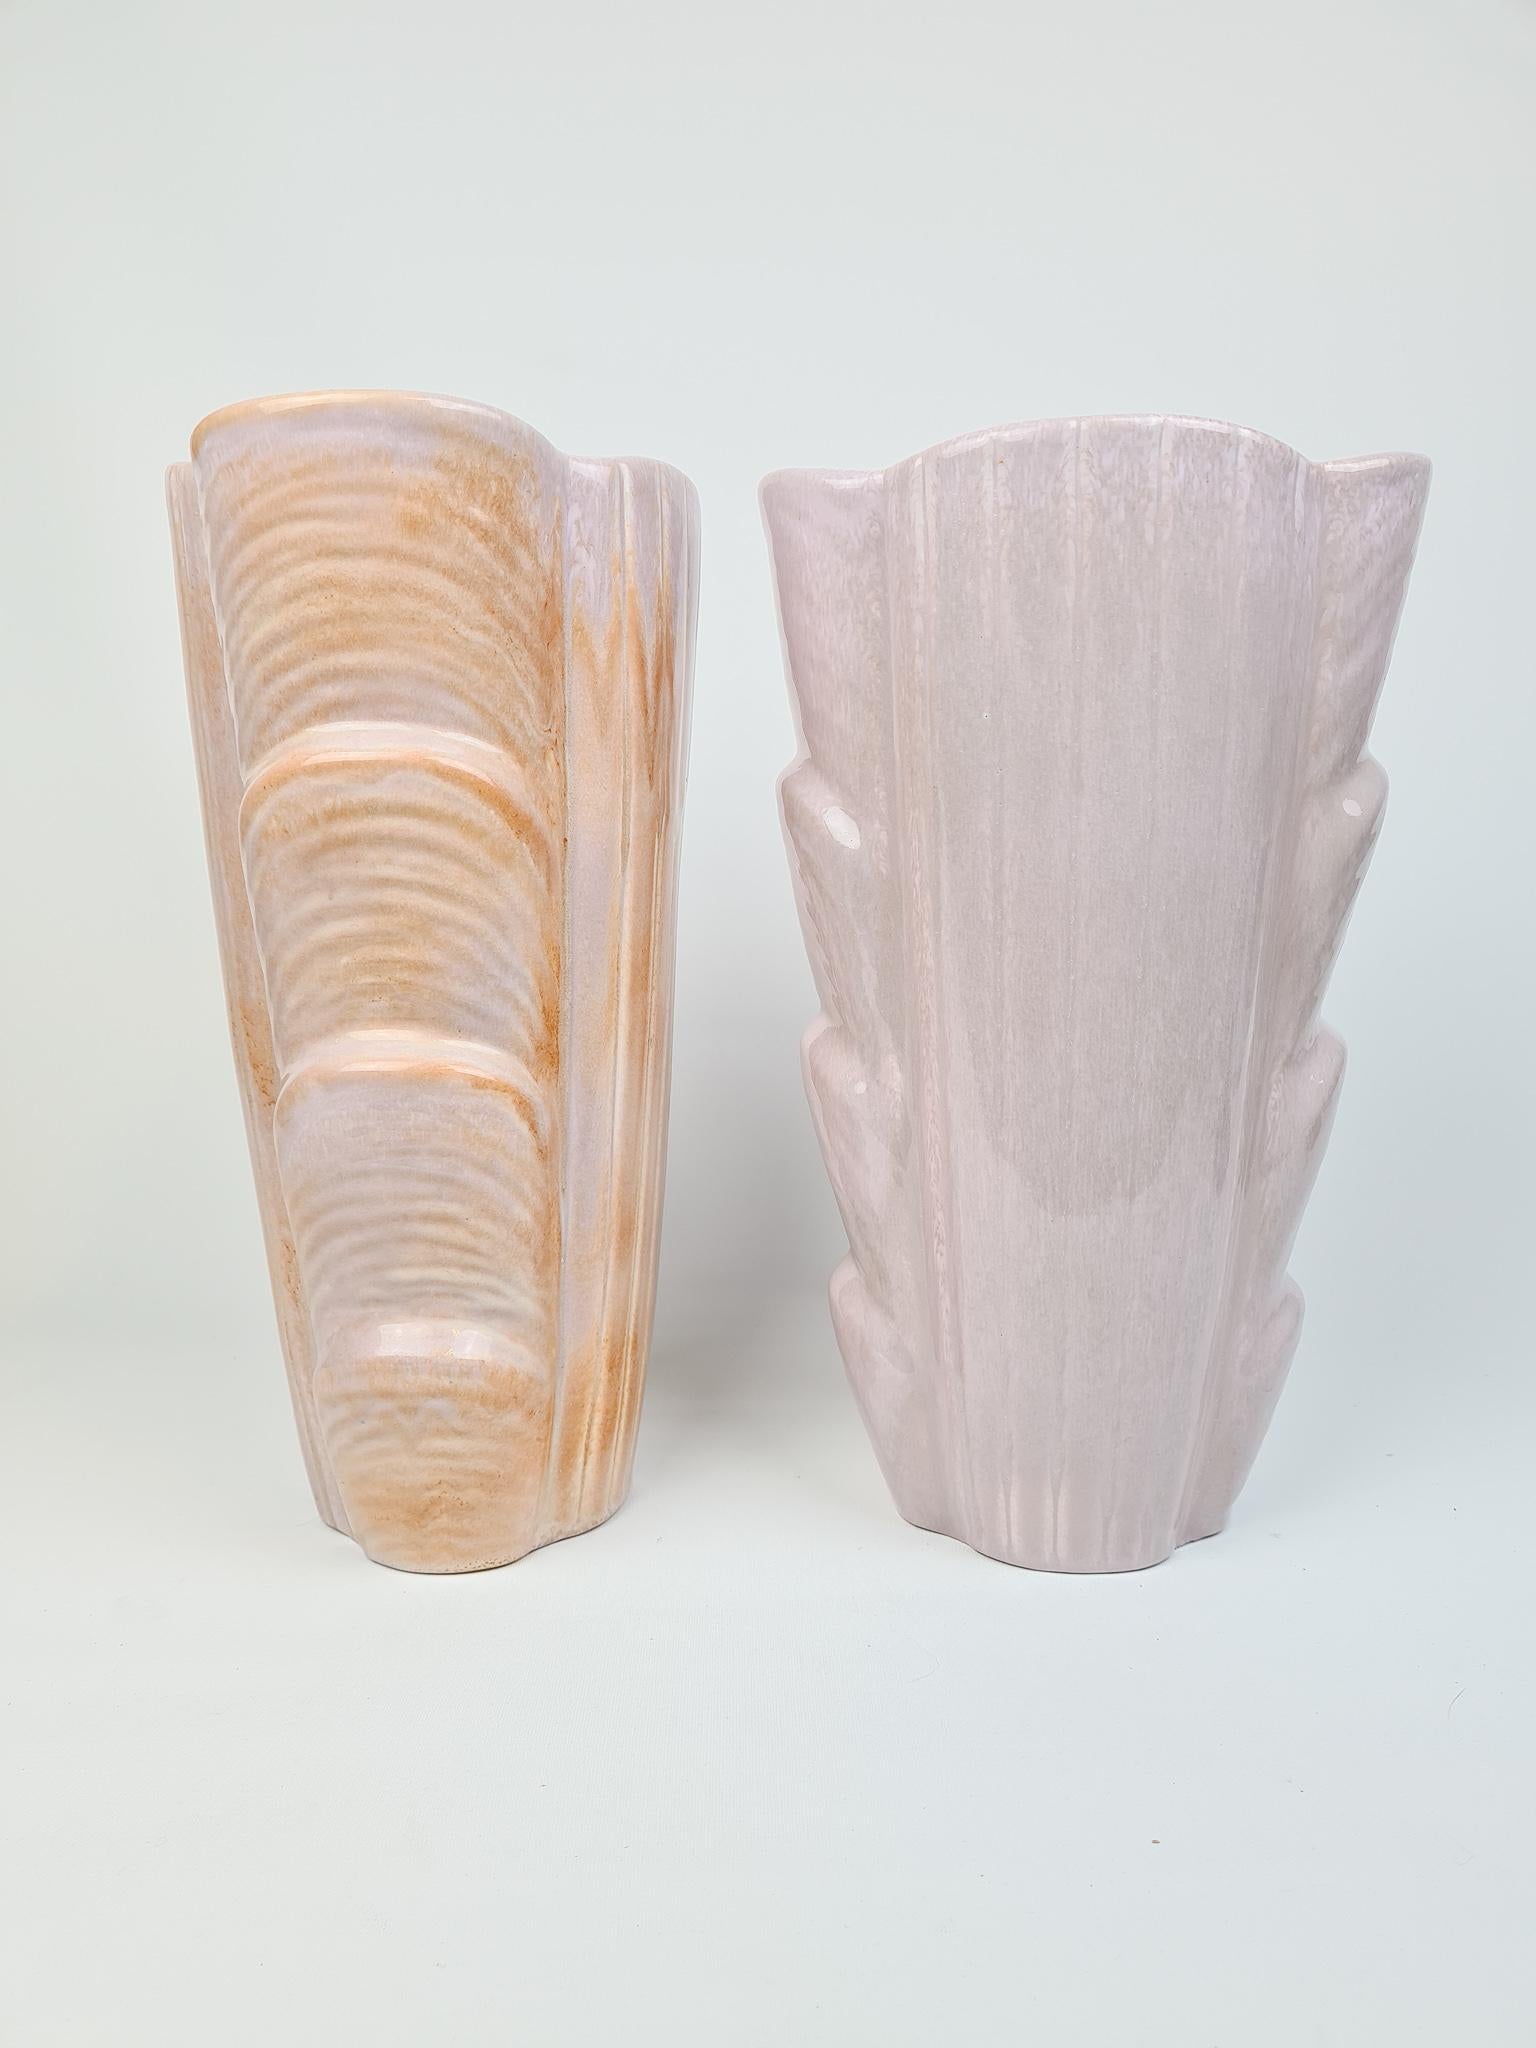 Midcentury Modern Large Ceramic Vases Rörstrand Gunnar Nylund, Sweden For Sale 1